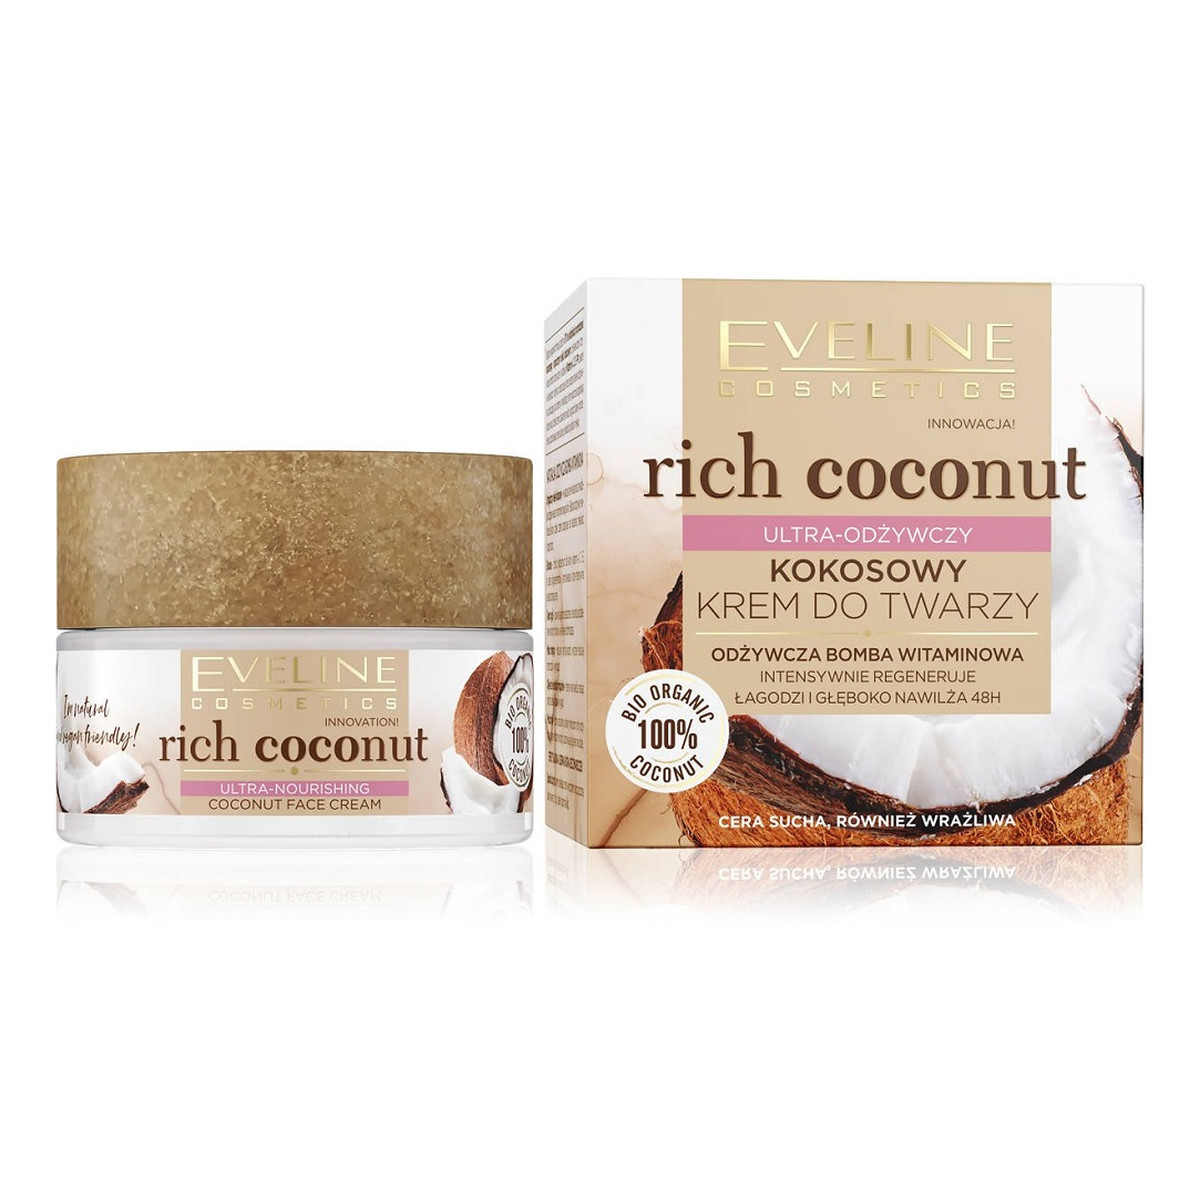 Eveline Rich Coconut Kokosowy Krem Do Twarzy Ultra-Odżywczy 50ml